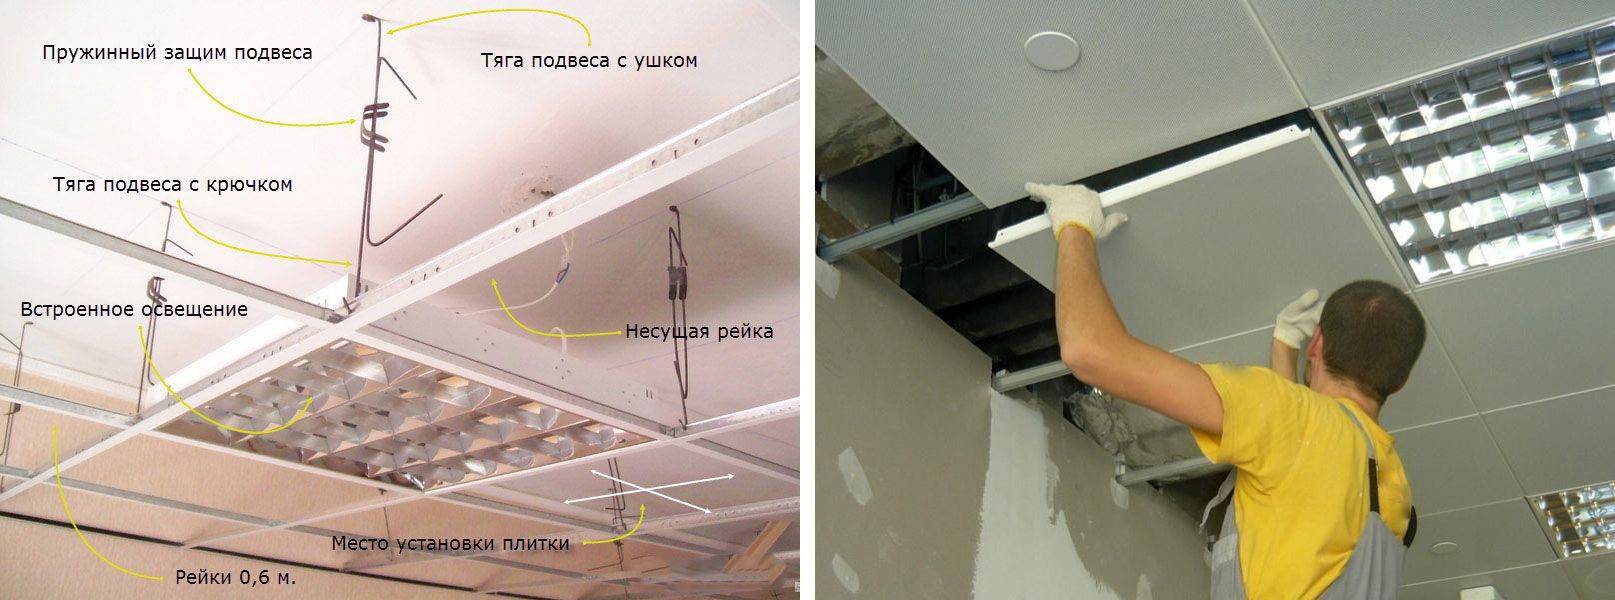 Установка точечных светильников в натяжной потолок своими руками: пошаговая инструкция по монтажу